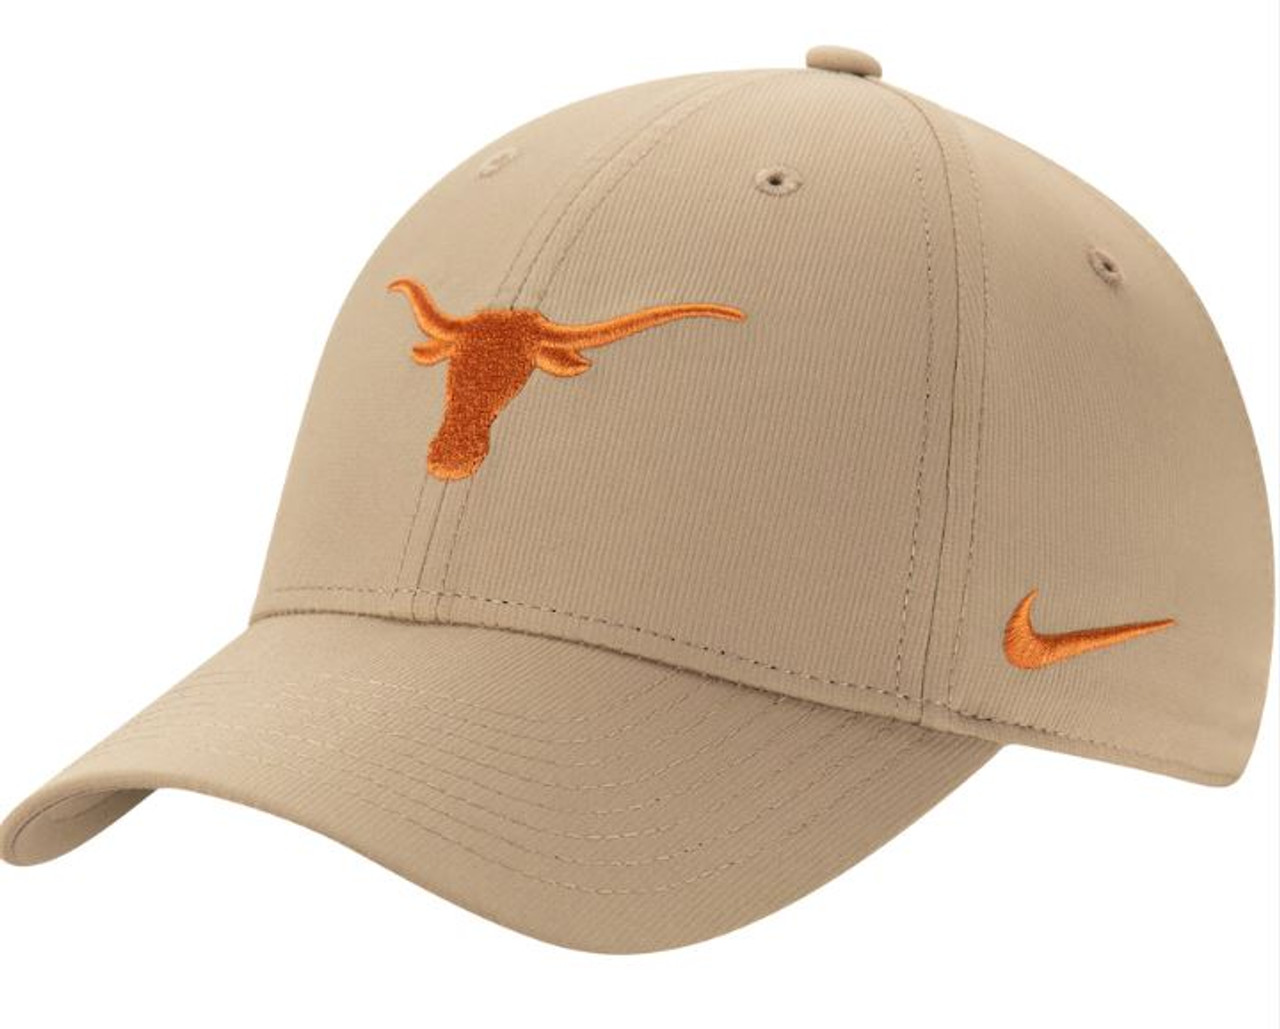 Nike Dri-Fit Men's University of Texas LongHorns shirt Medium